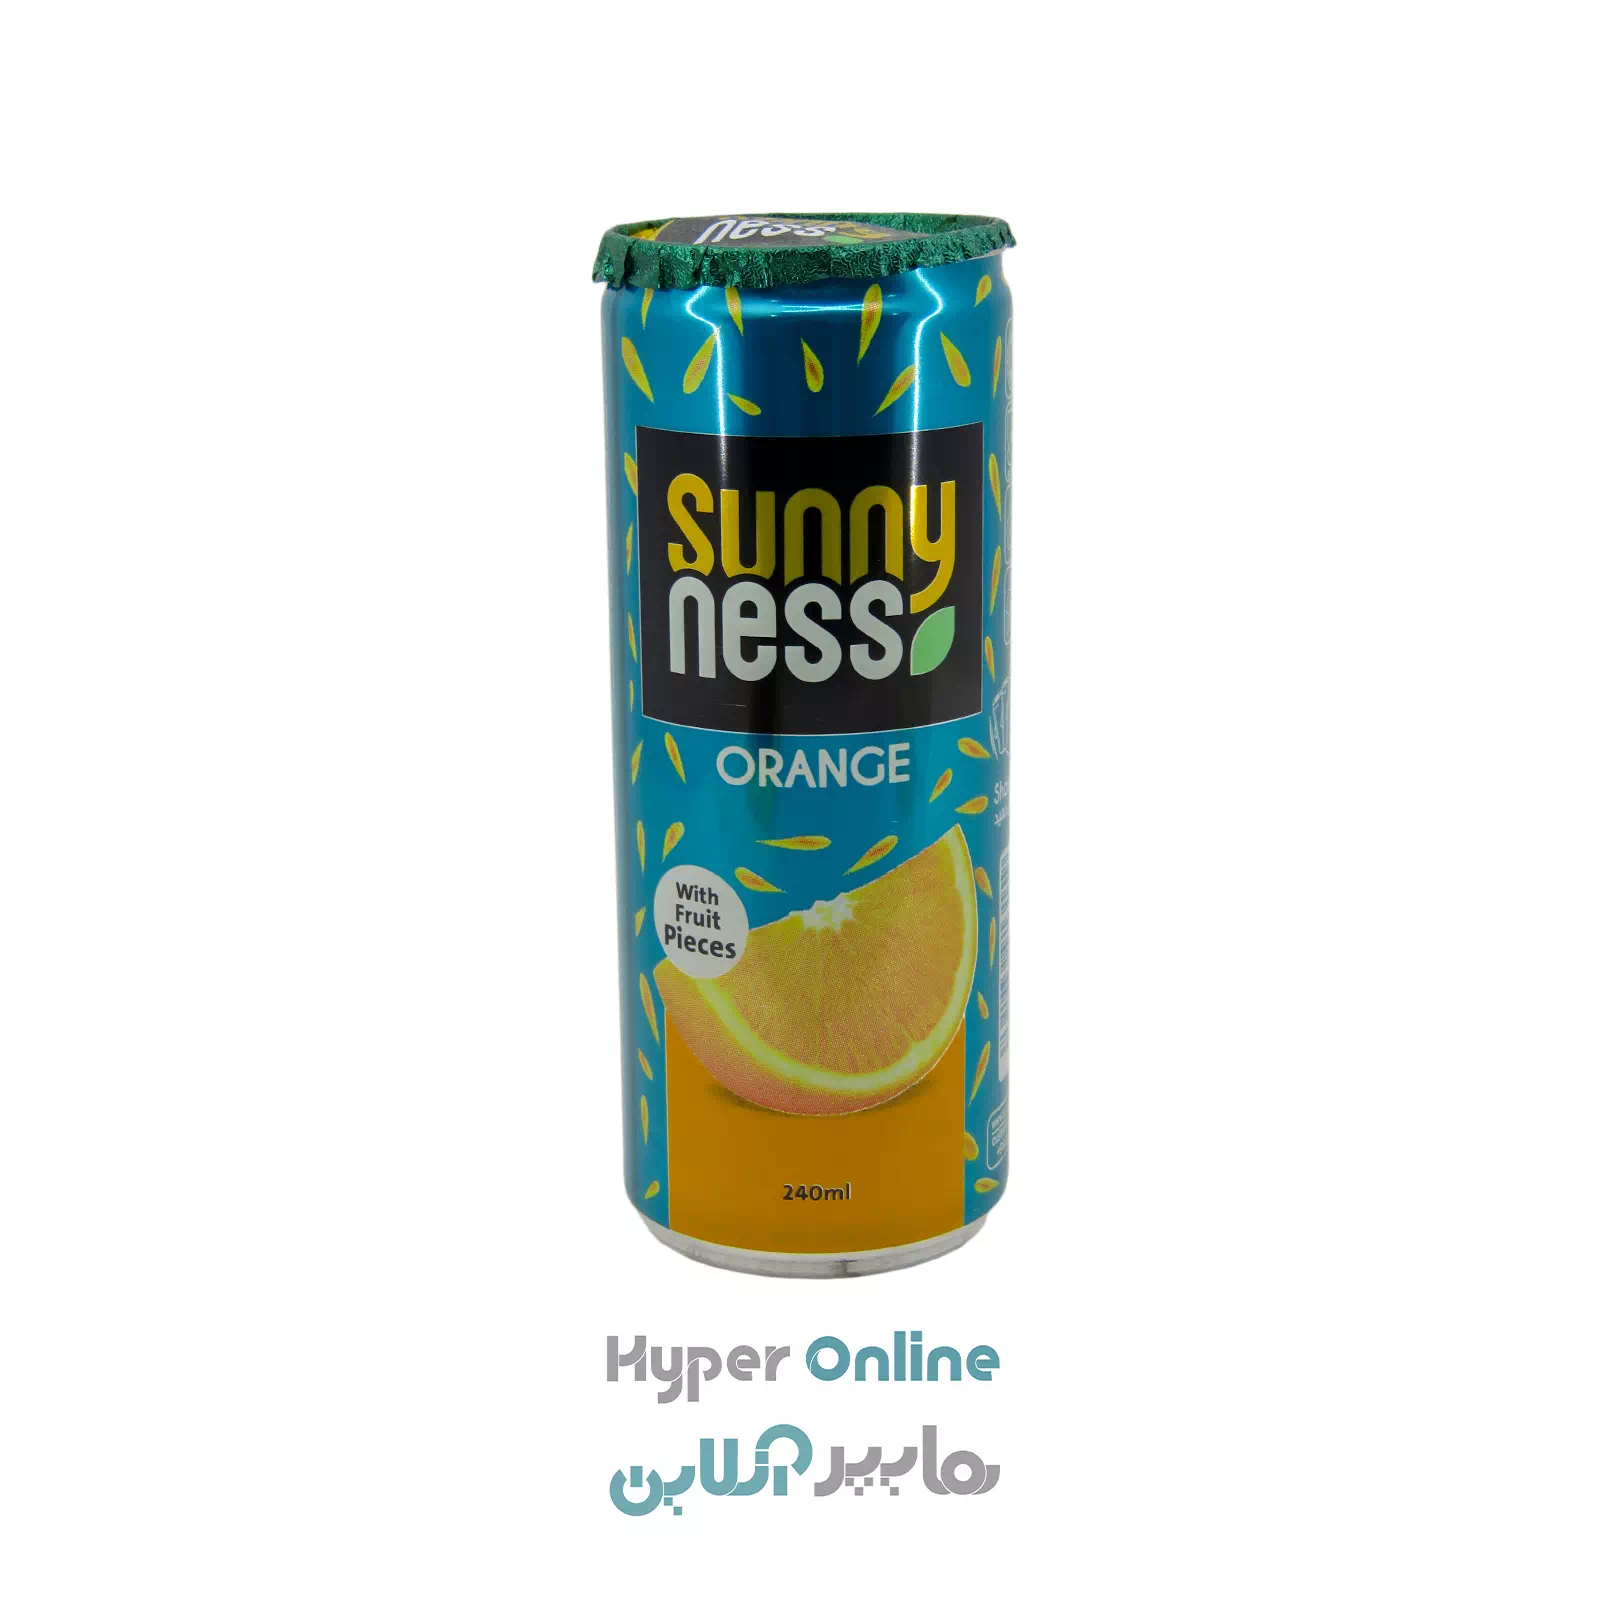 نوشیدنی بدون گاز پرتقال با تکه میوه قوطی 240 میلی لیتر سانی نس